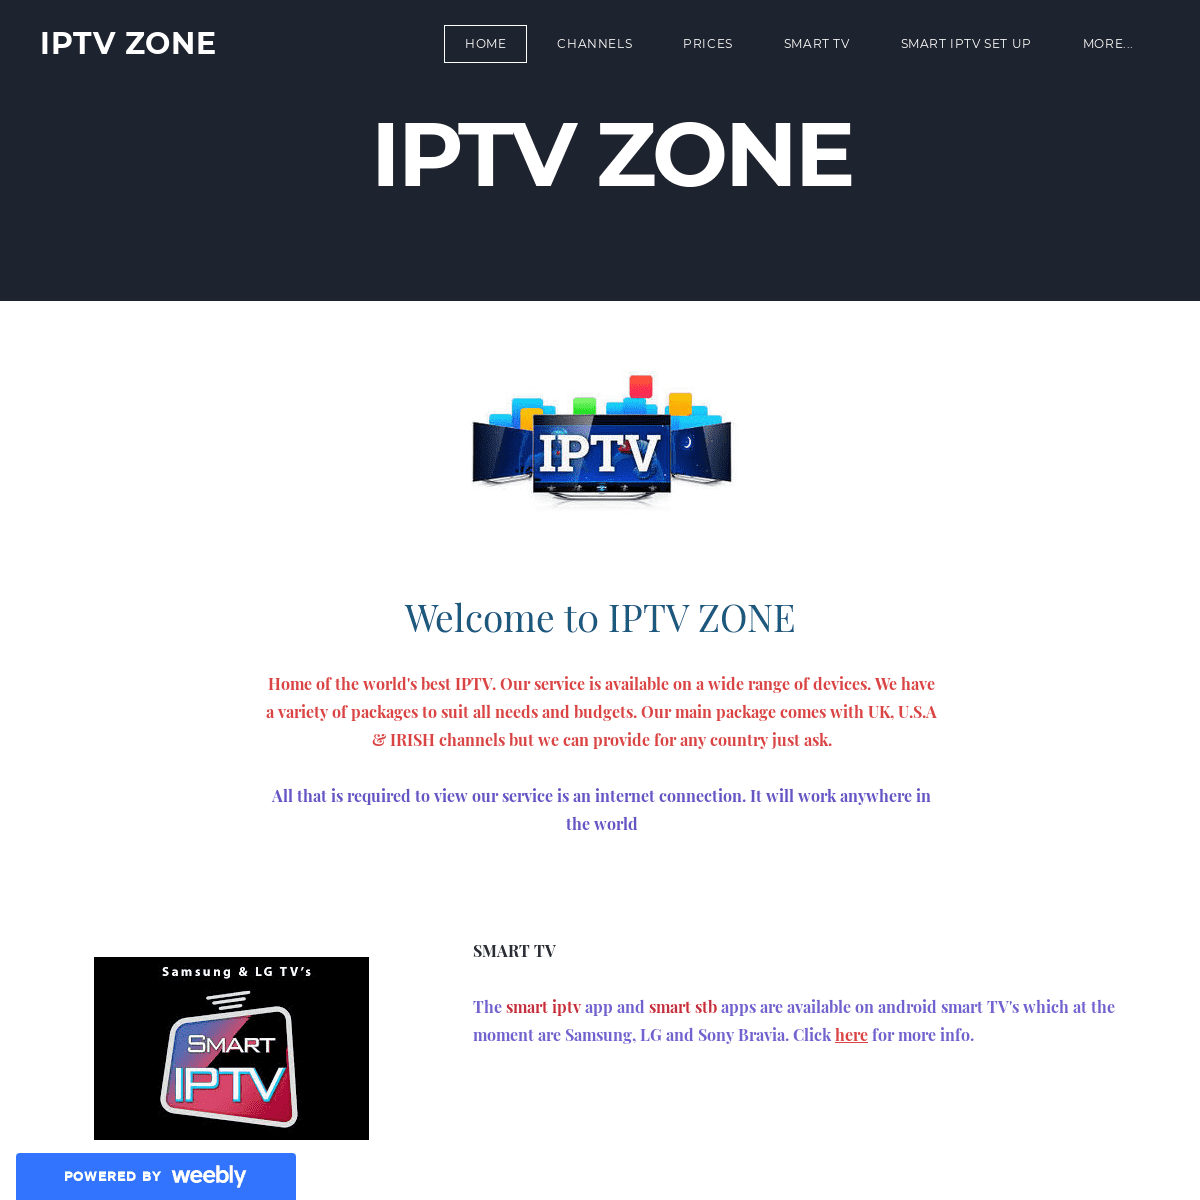 IPTV ZONE - HOME